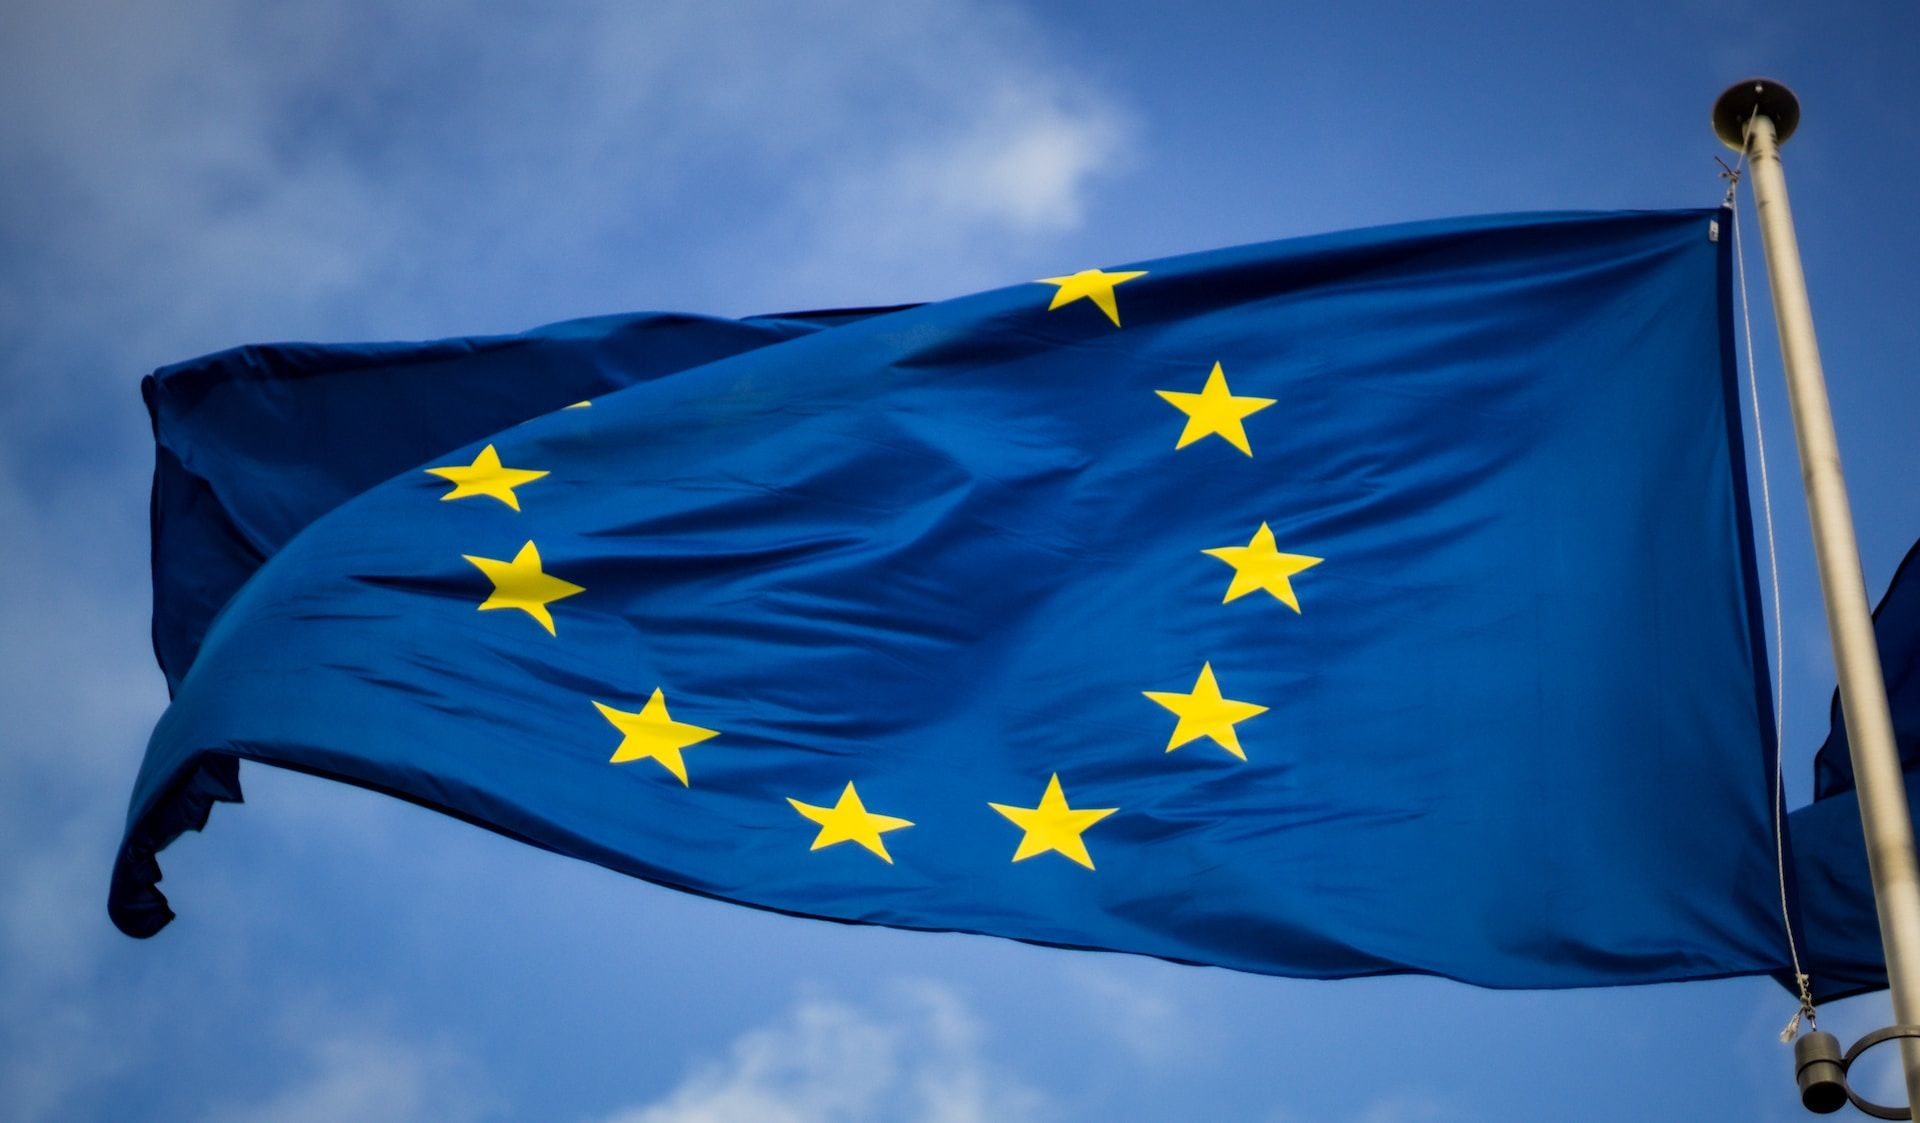  Заявку Украины на членство в ЕС оценят 8 ноября